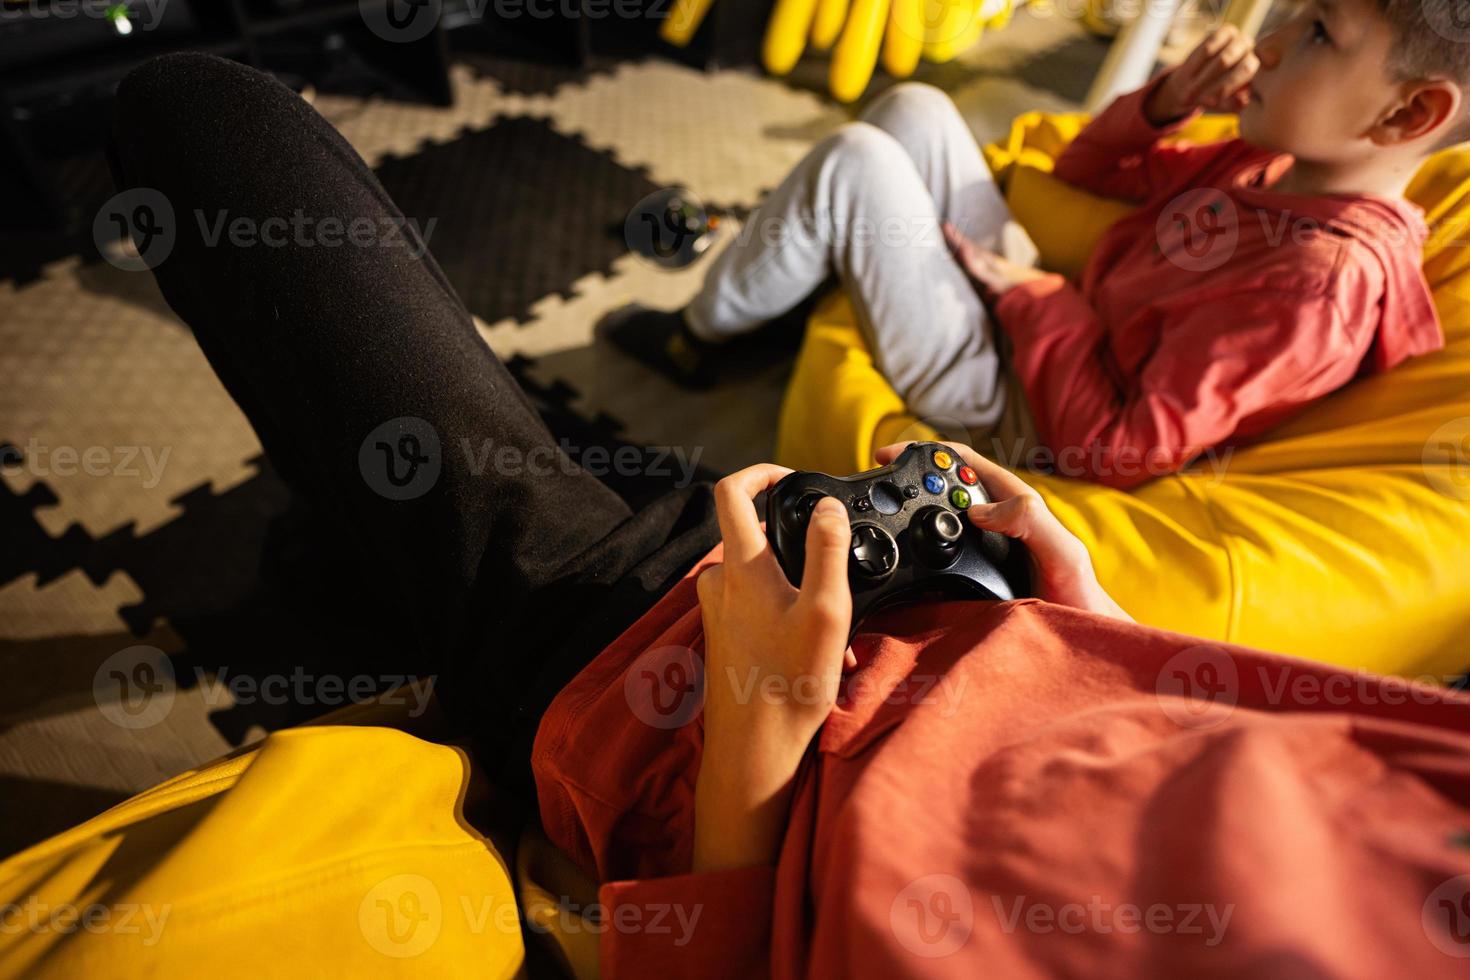 två bröder spelar video spel trösta, Sammanträde på gul pouf i barn spela Centrum. foto